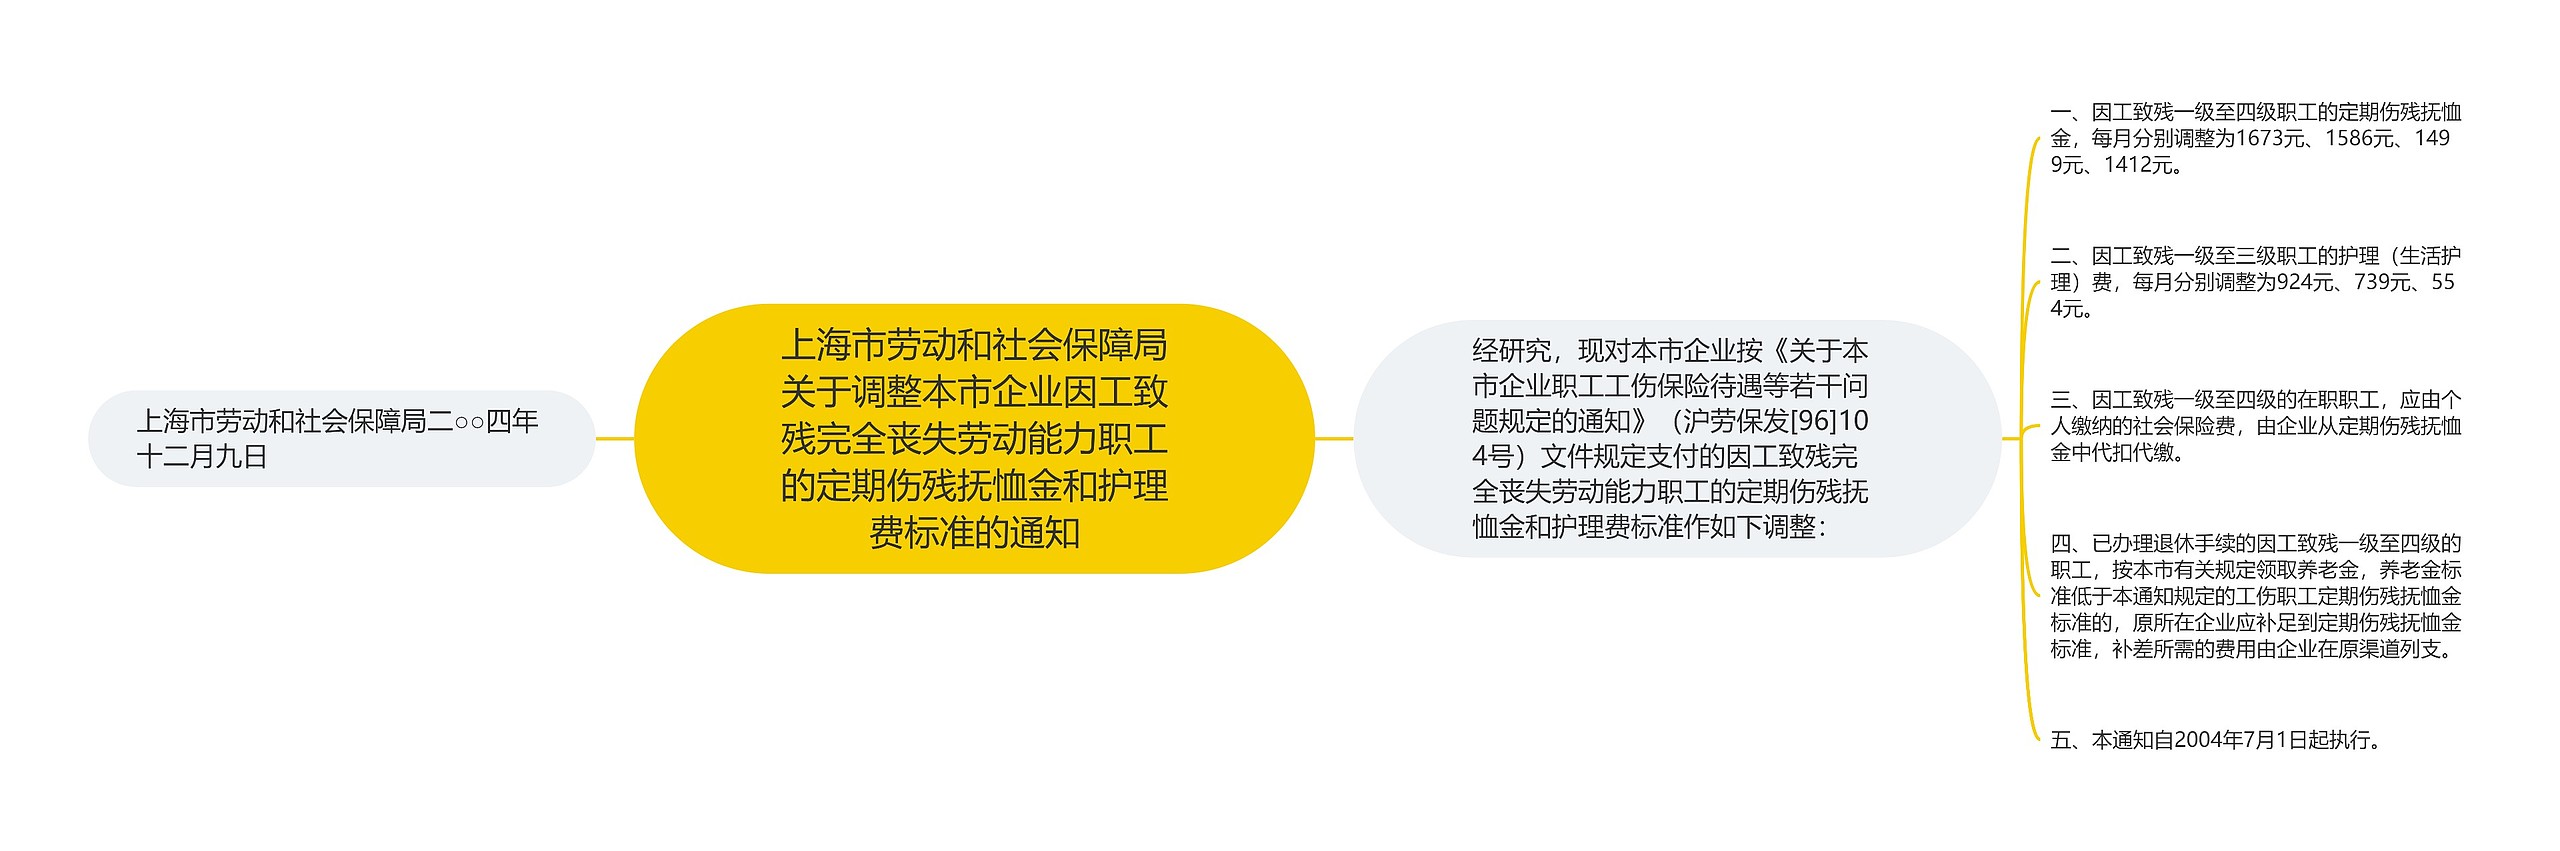 上海市劳动和社会保障局关于调整本市企业因工致残完全丧失劳动能力职工的定期伤残抚恤金和护理费标准的通知思维导图